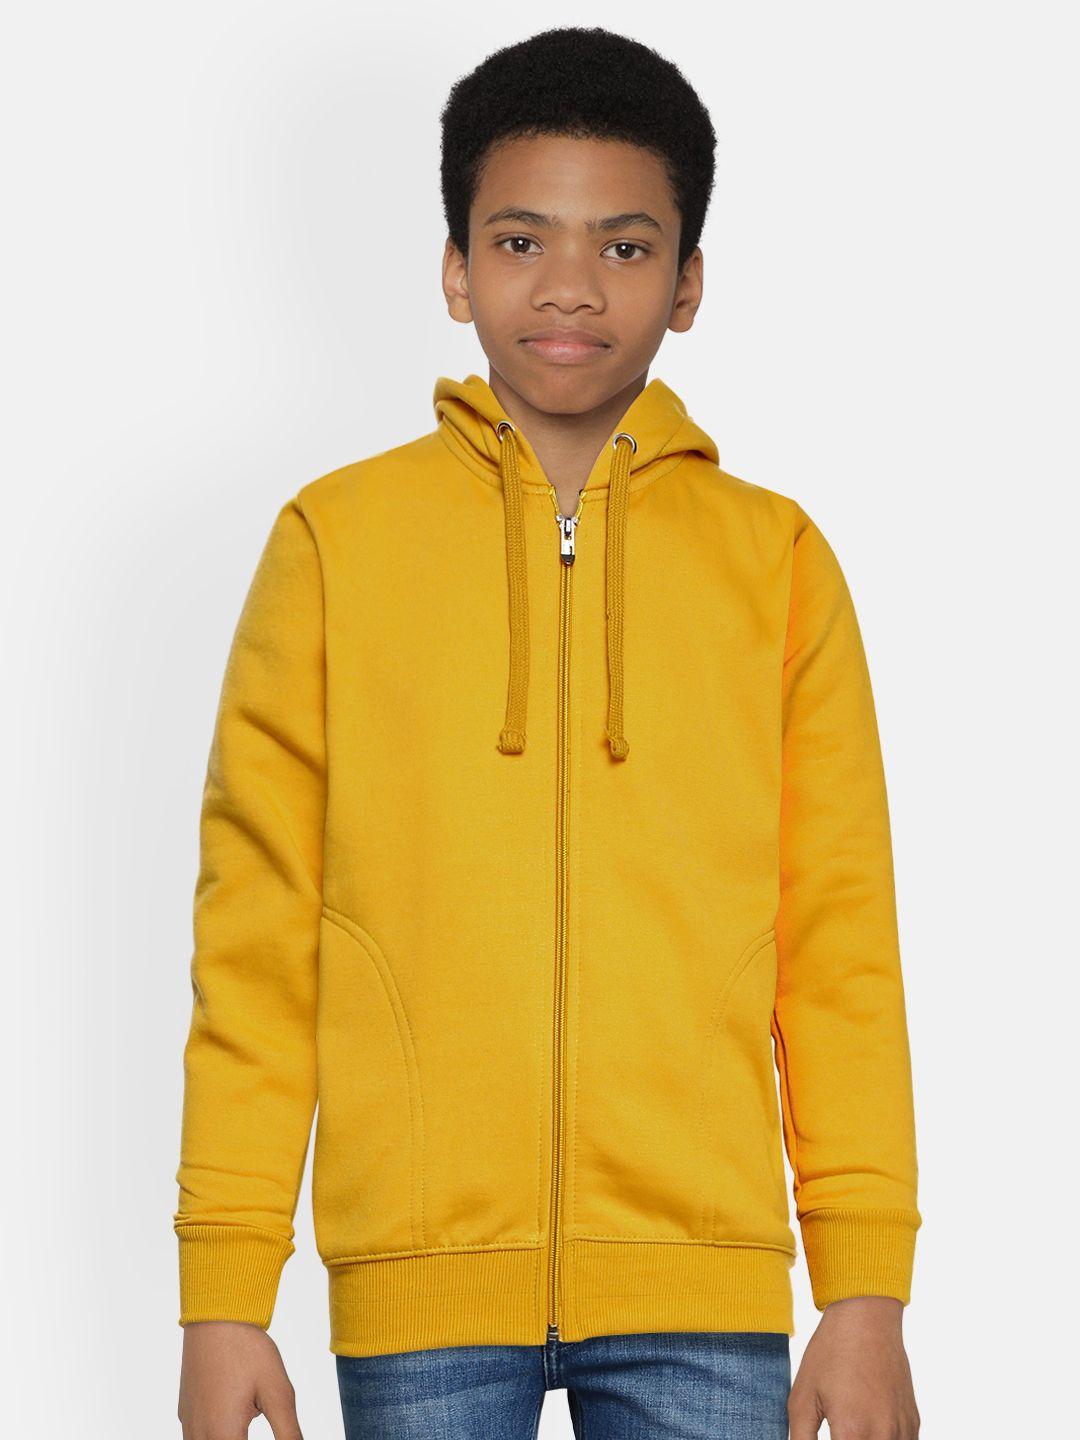 adbucks-boys-mustard-yellow-solid-hooded-sweatshirt